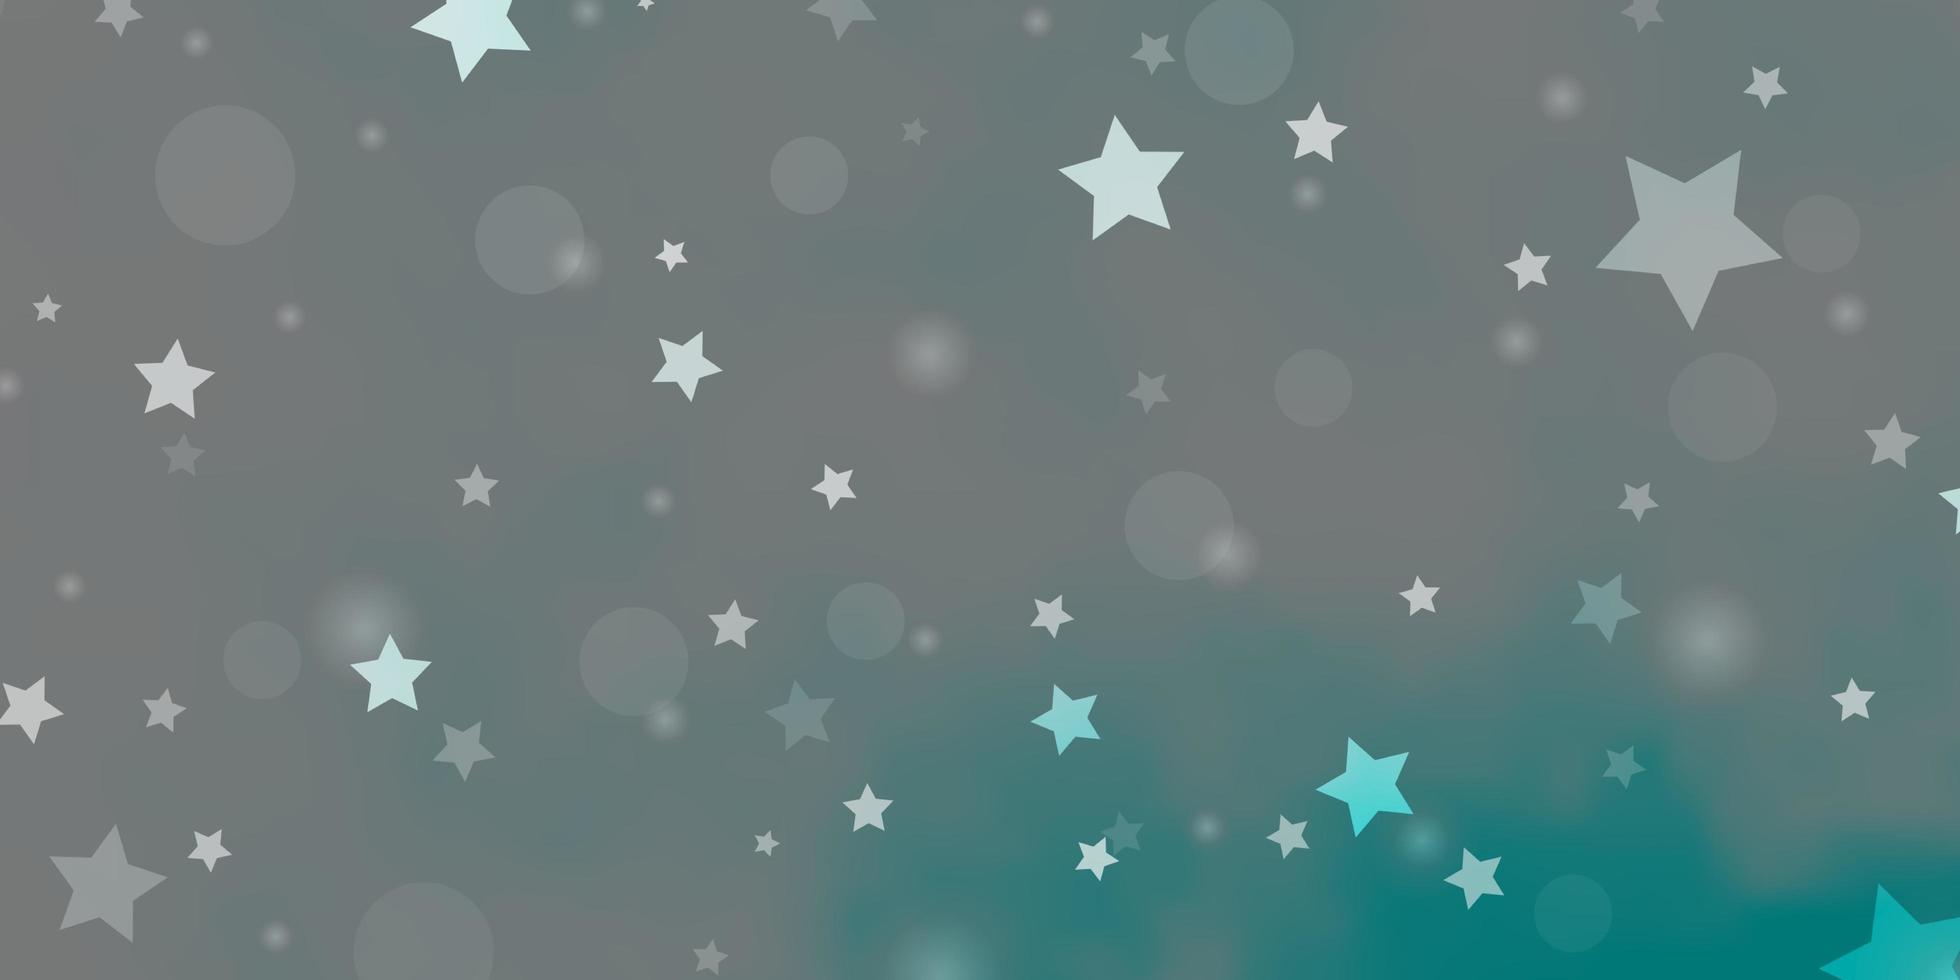 modello vettoriale azzurro con cerchi, stelle. illustrazione con set di sfere astratte colorate, stelle. modello per tessuto alla moda, sfondi.